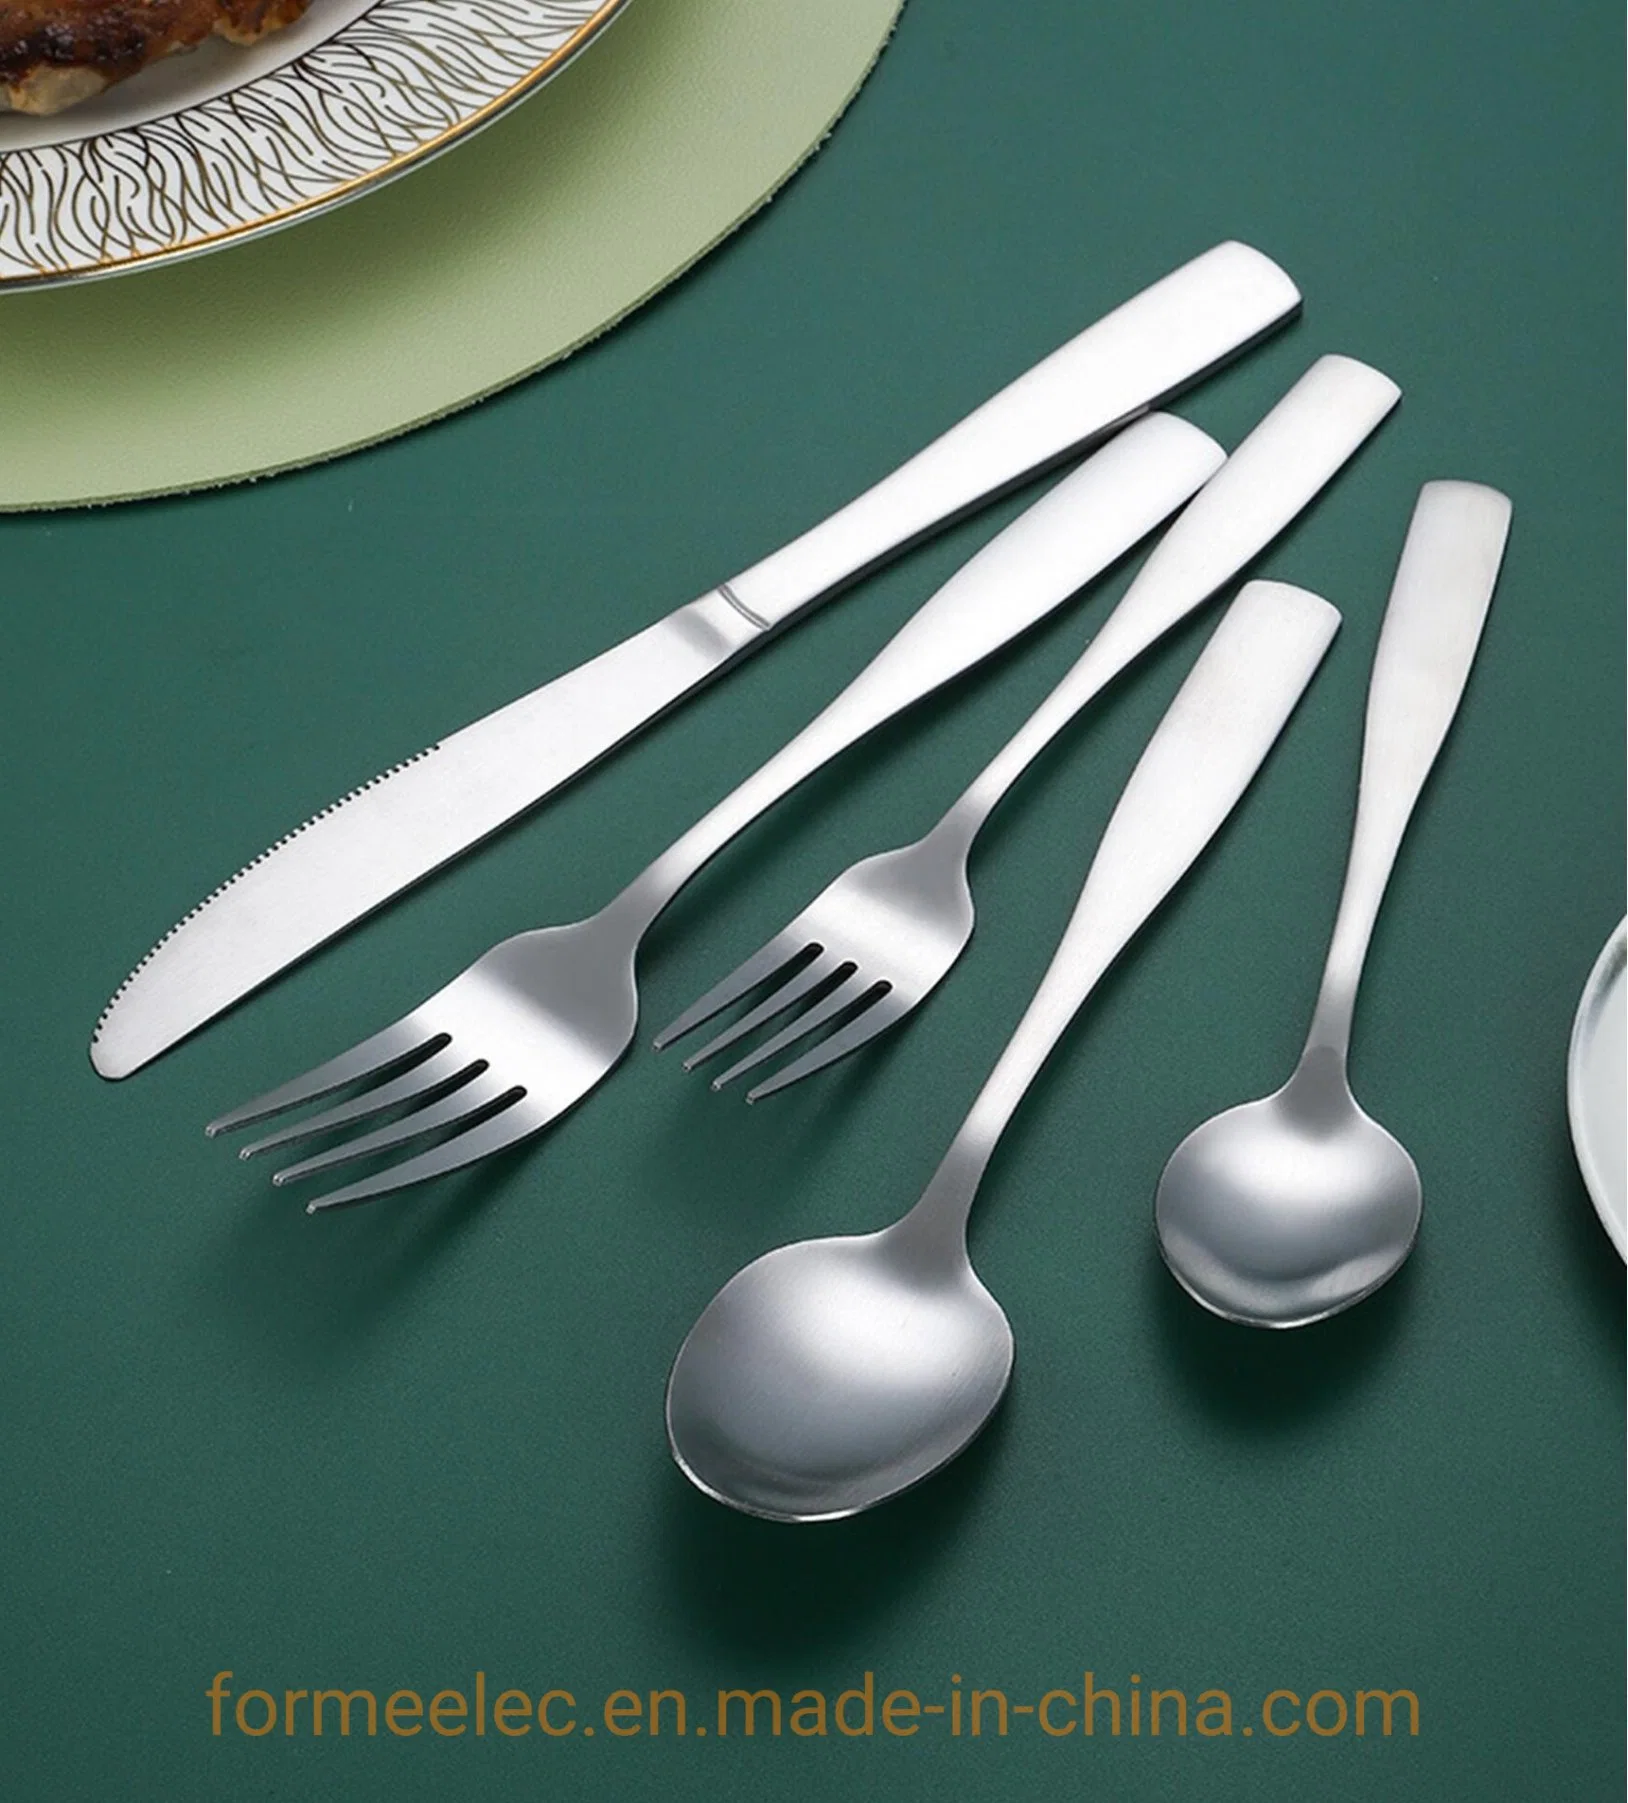 Talheres utensílios de comer o jantar bife de garfos colher de sopa de Facas de mesa definir talheres